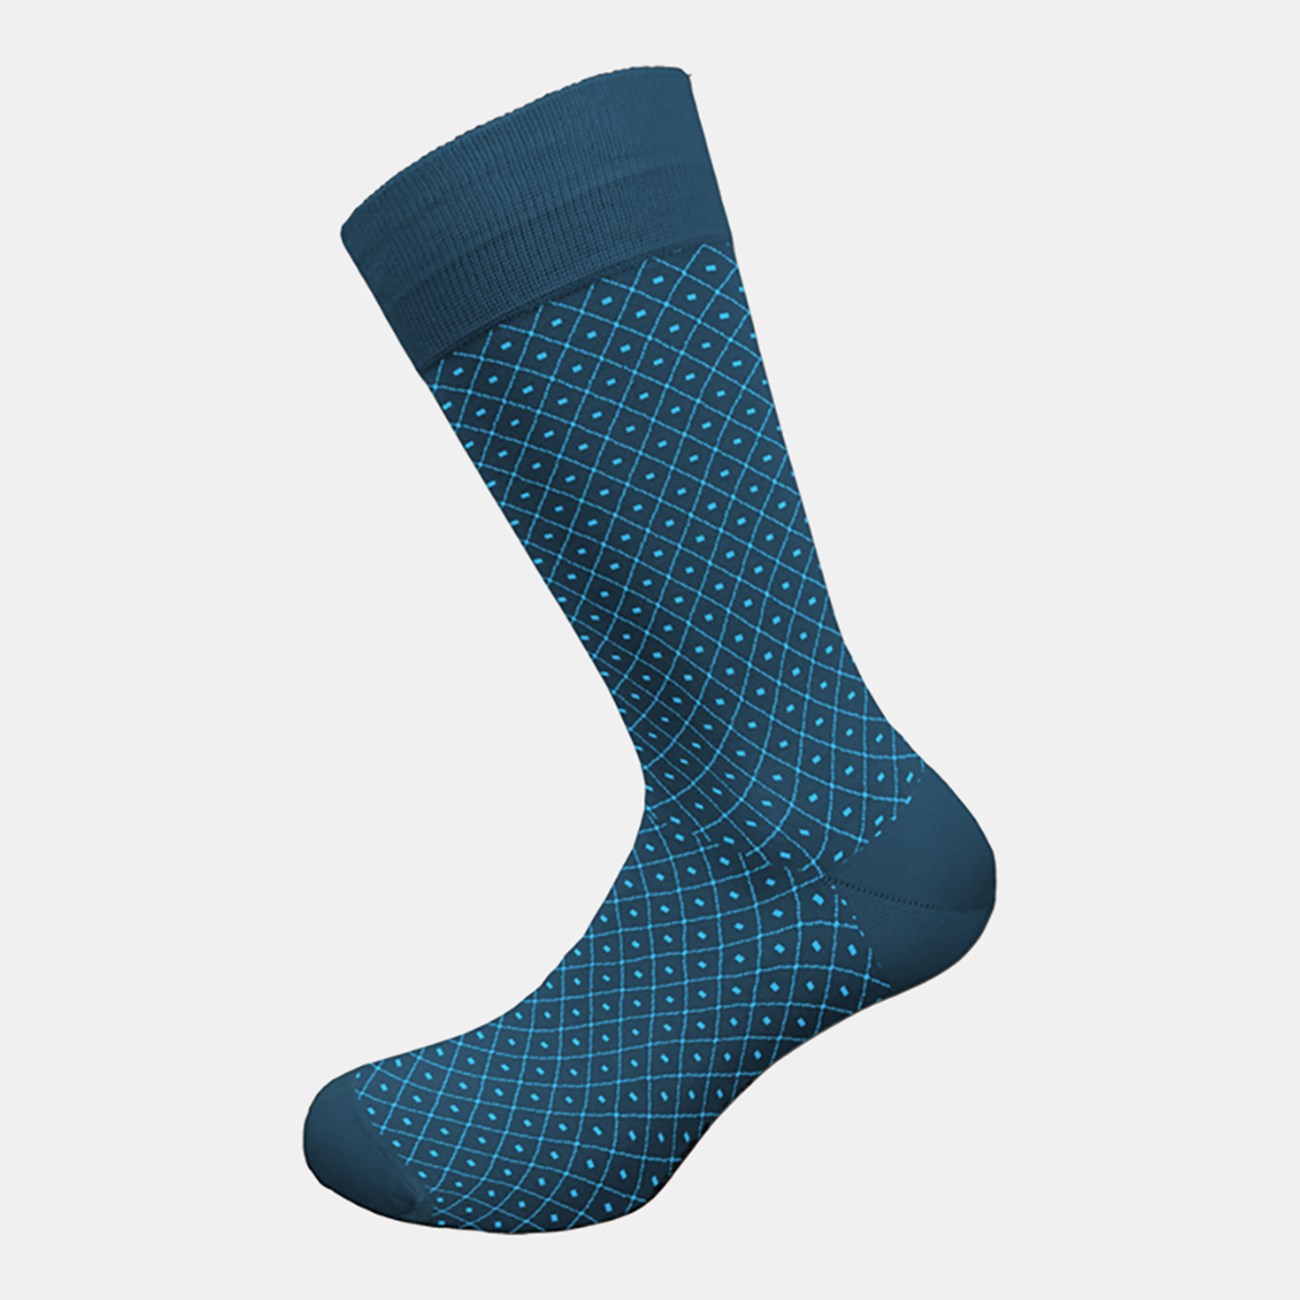  Ανδρικές Κάλτσες Bamboo W304-8-0438 - The Athlete's Foot